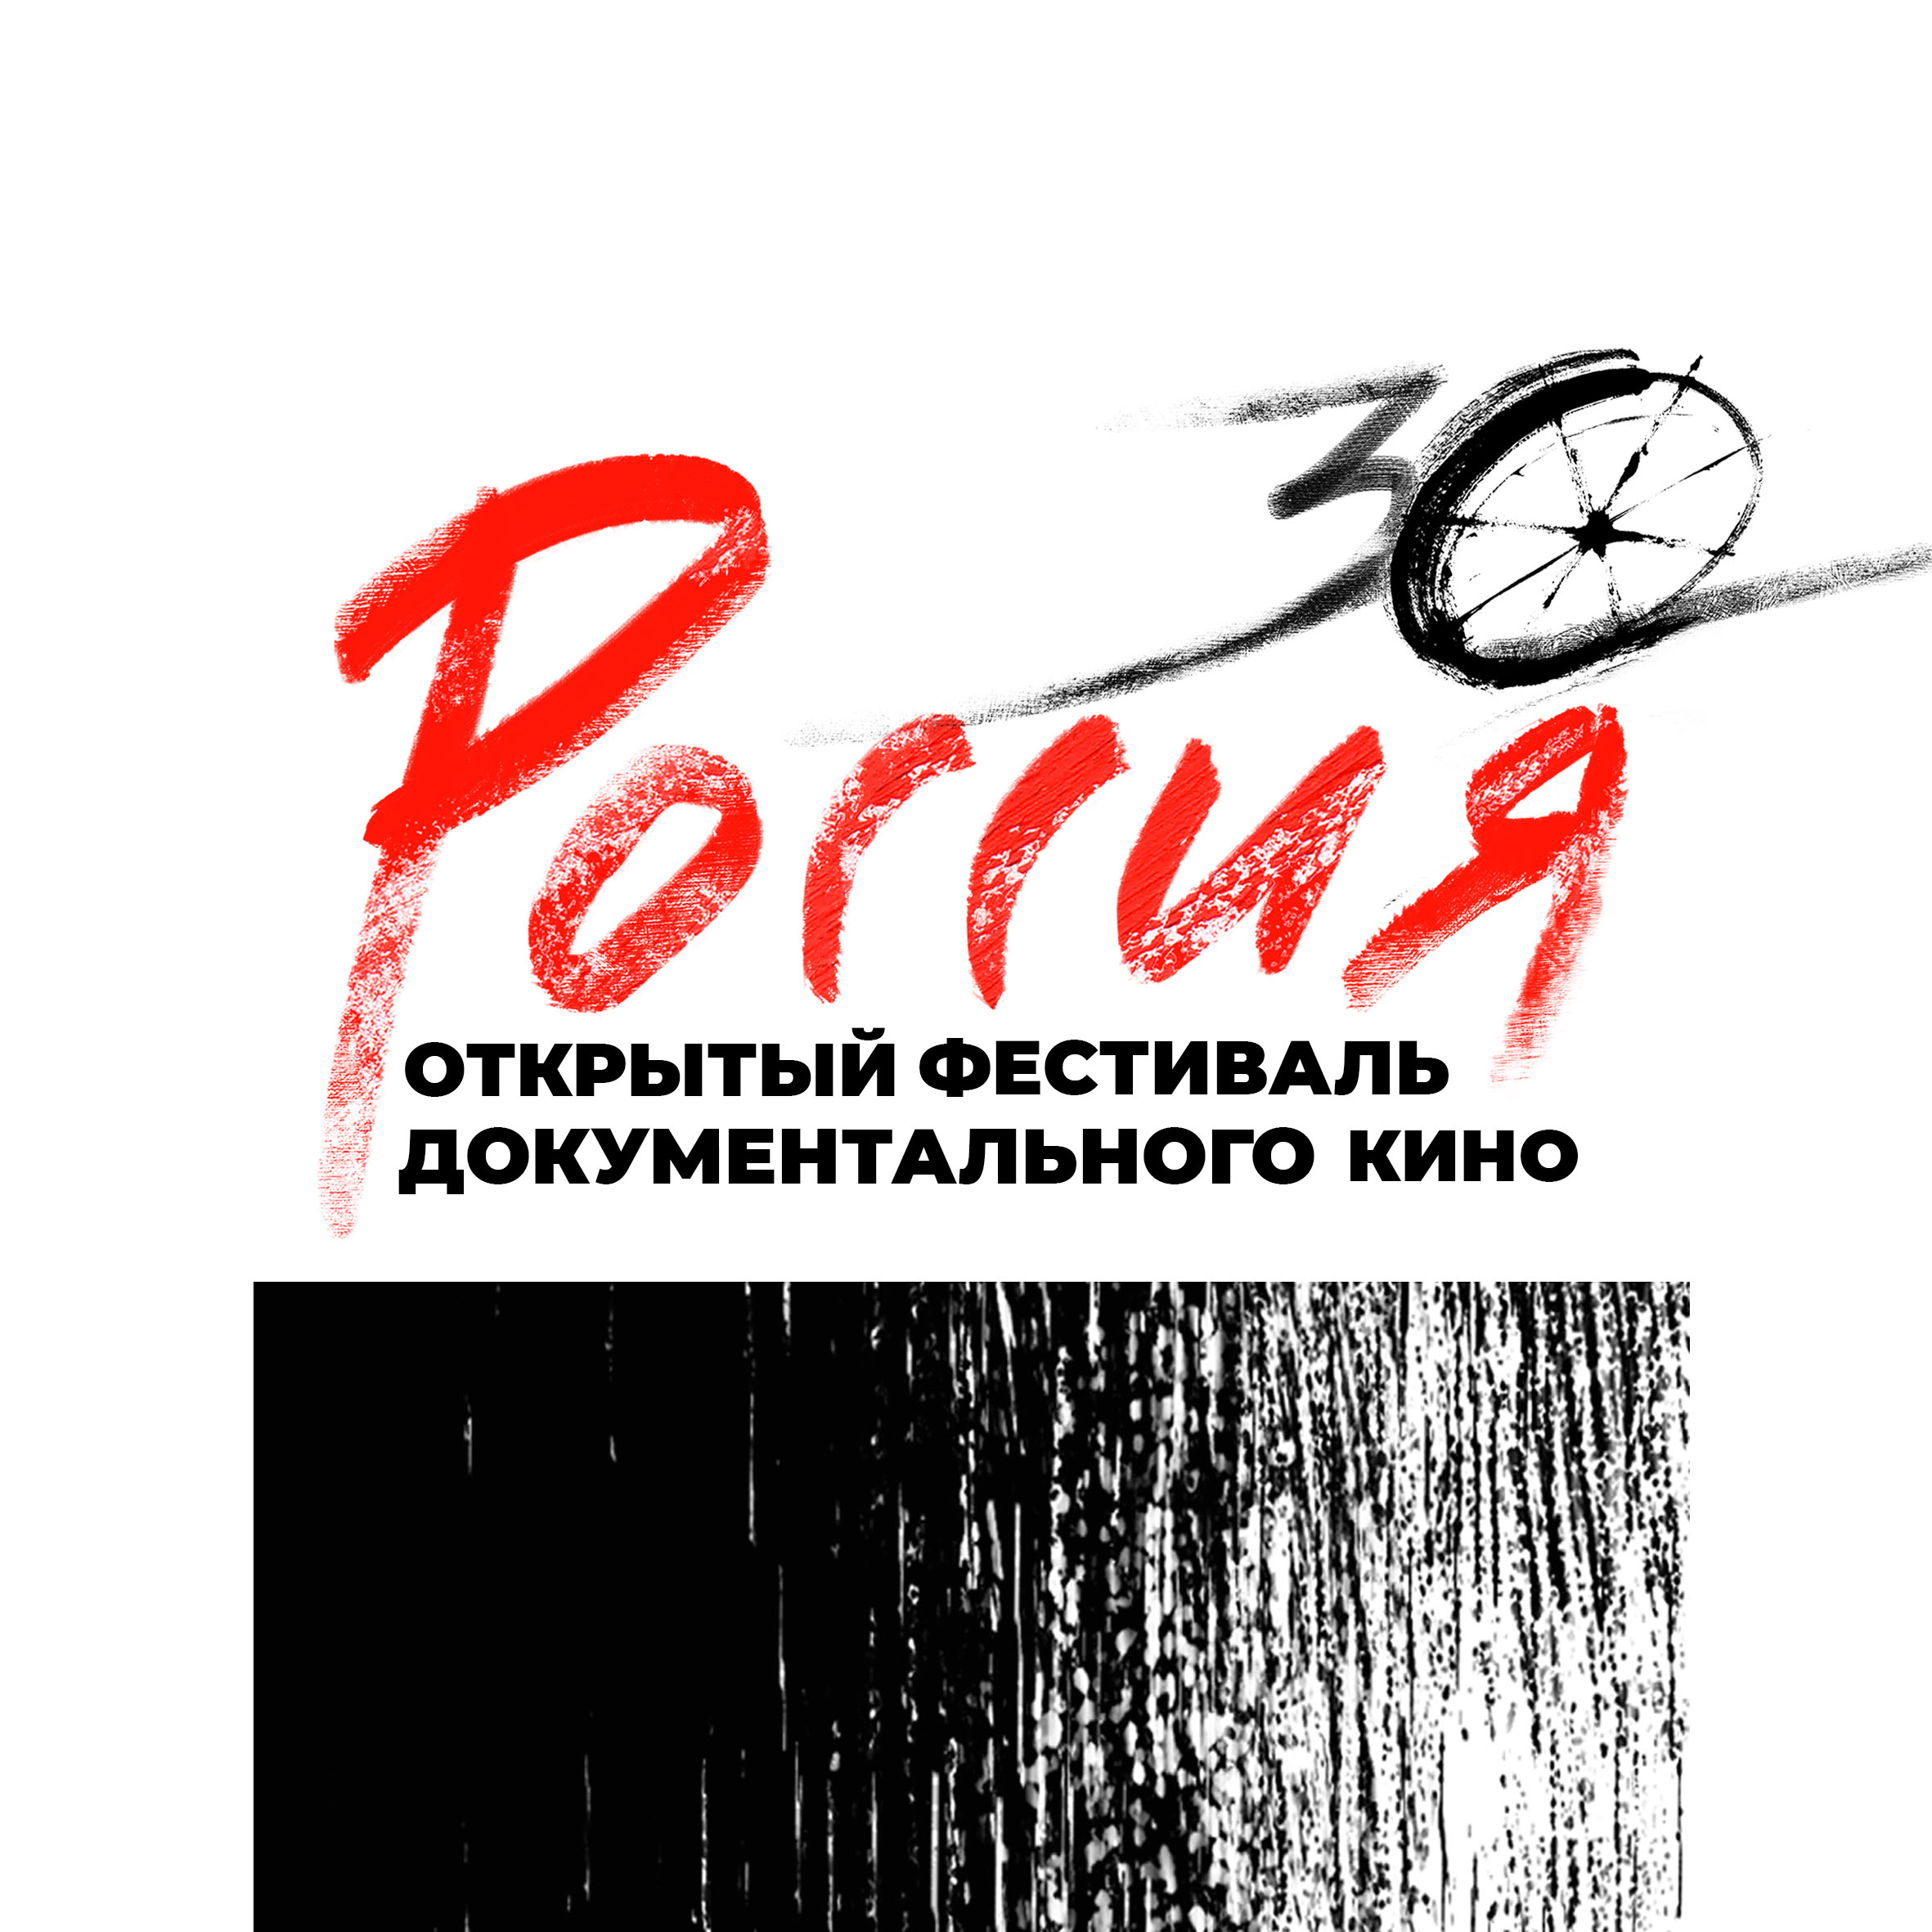 НФПП поддержит юбилейный фестиваль документального кино «Россия»